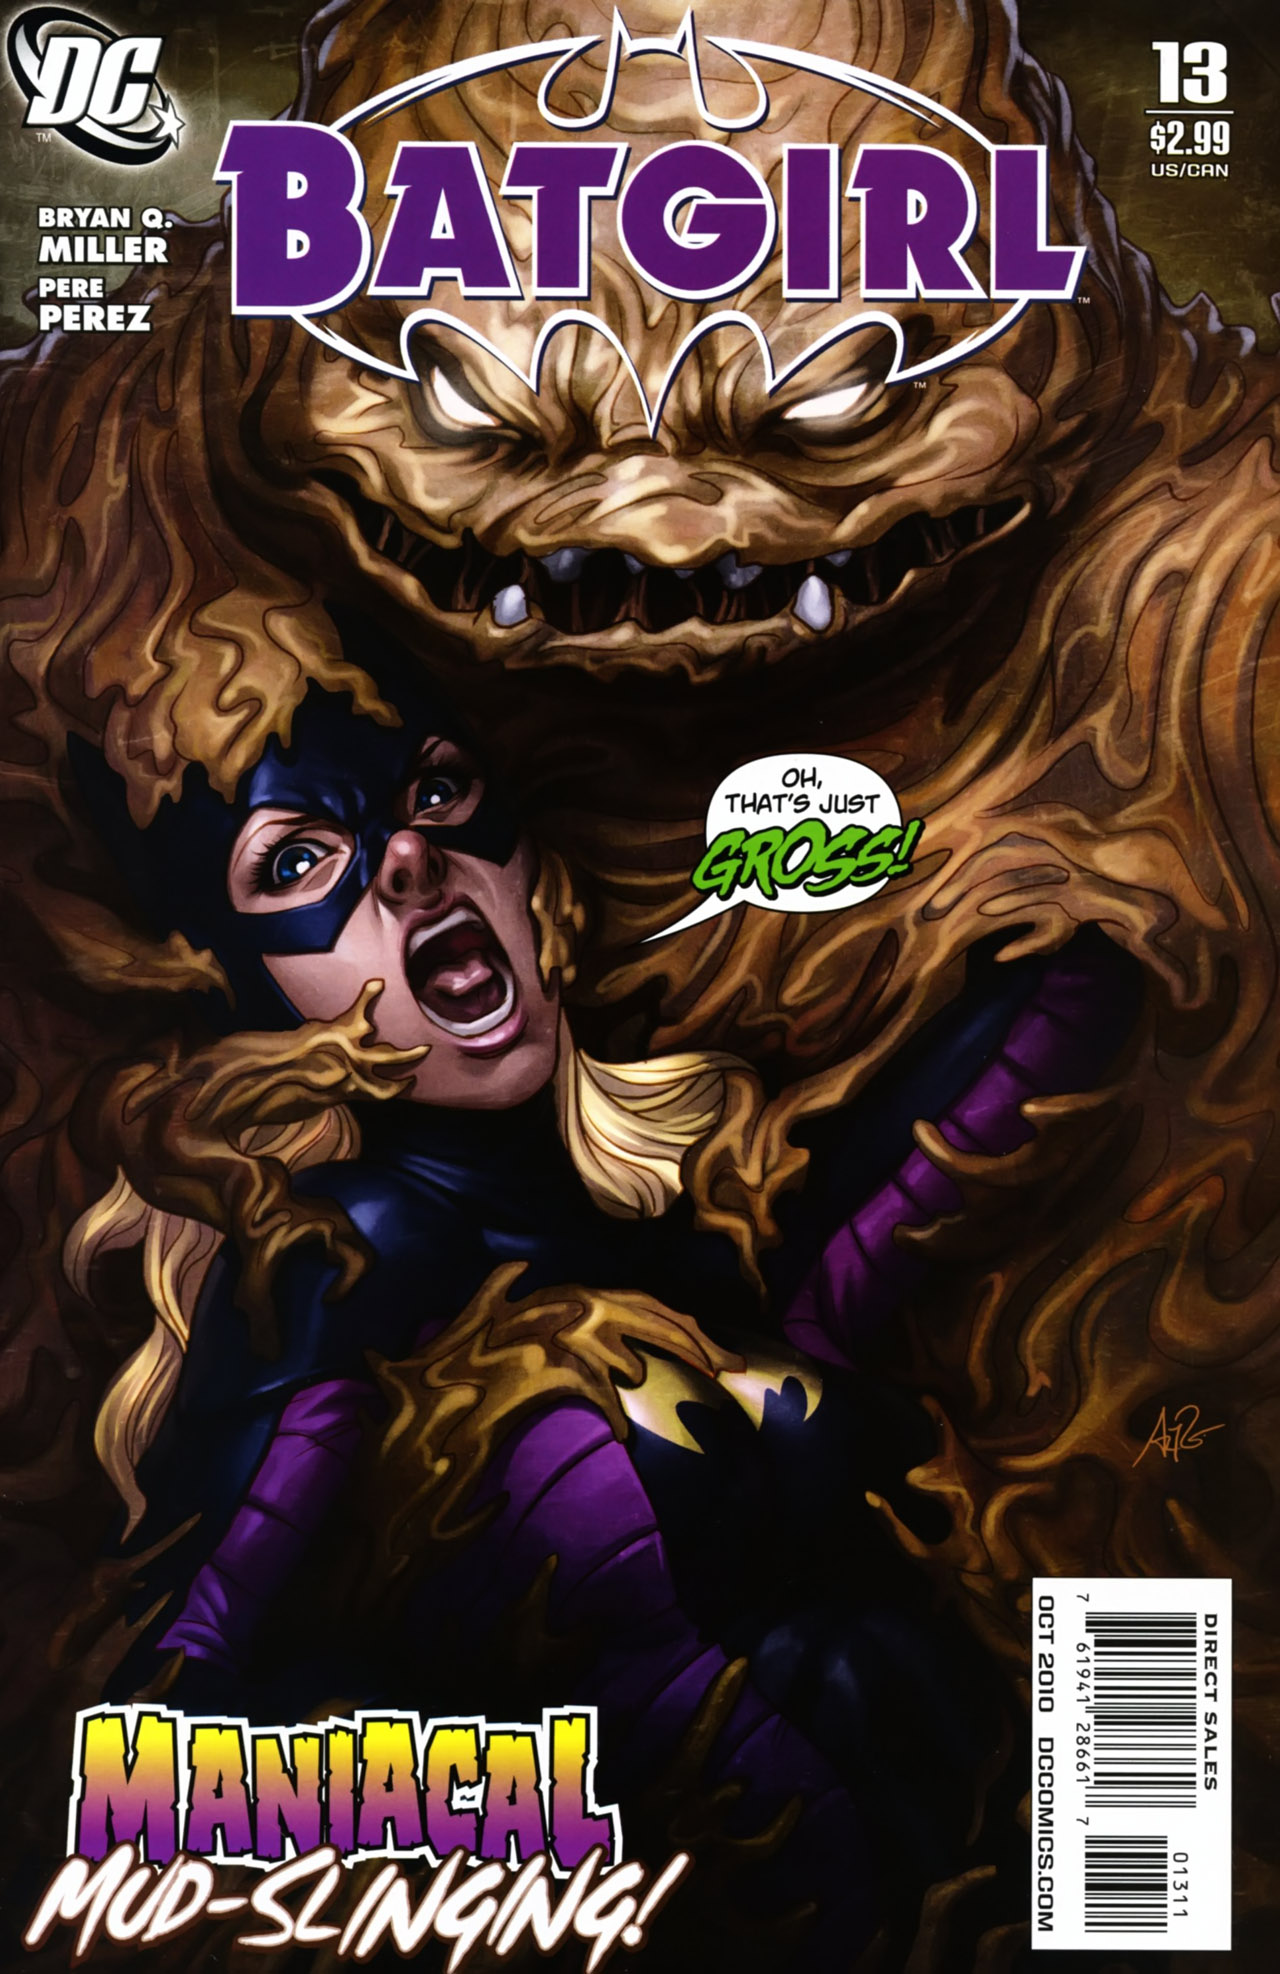 Batgirl Vol. 3 #13